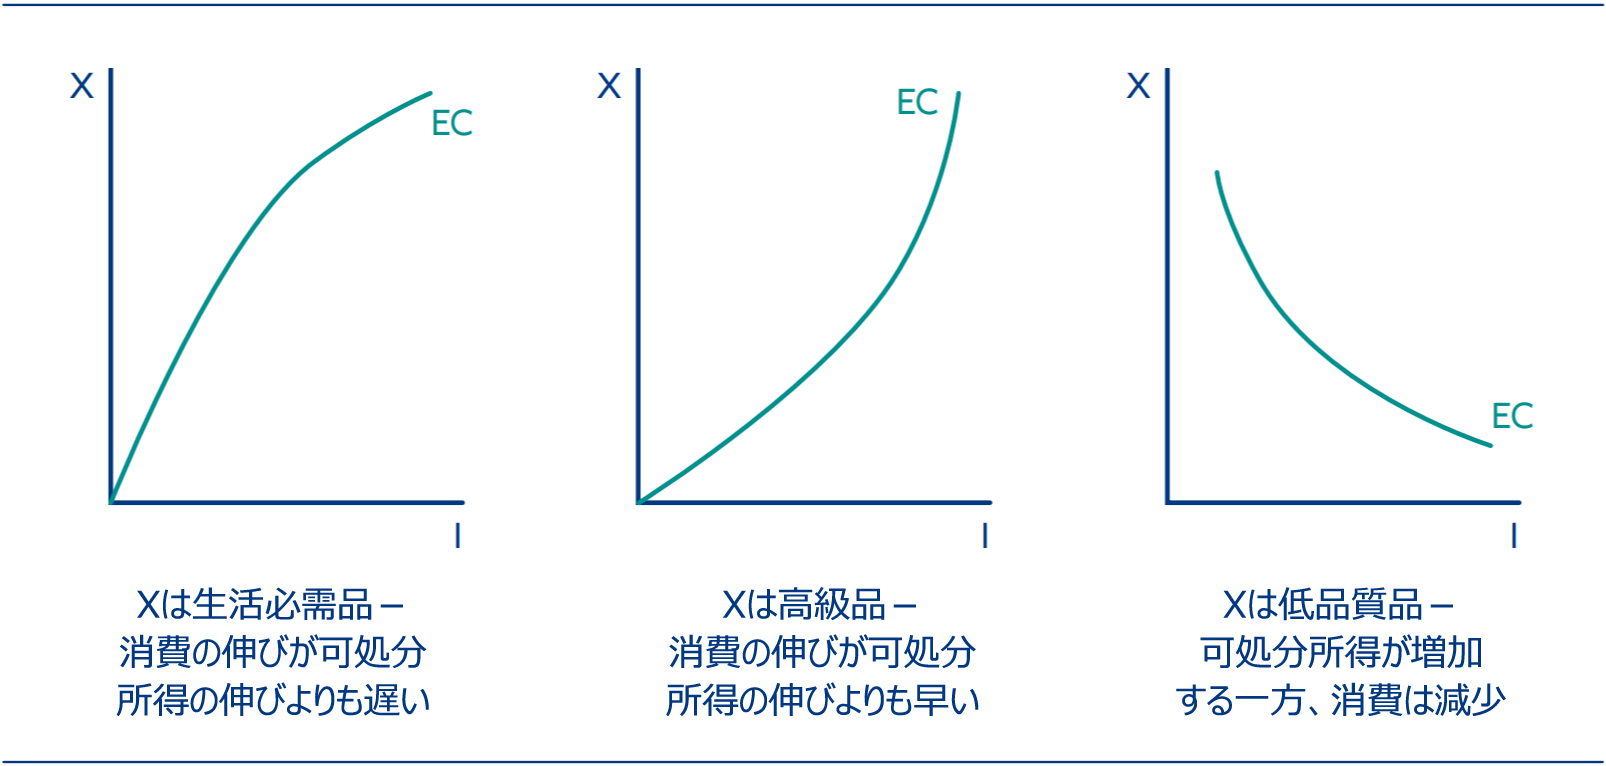 生活必需品、高級品および低品質品のエンゲル曲線（EC）